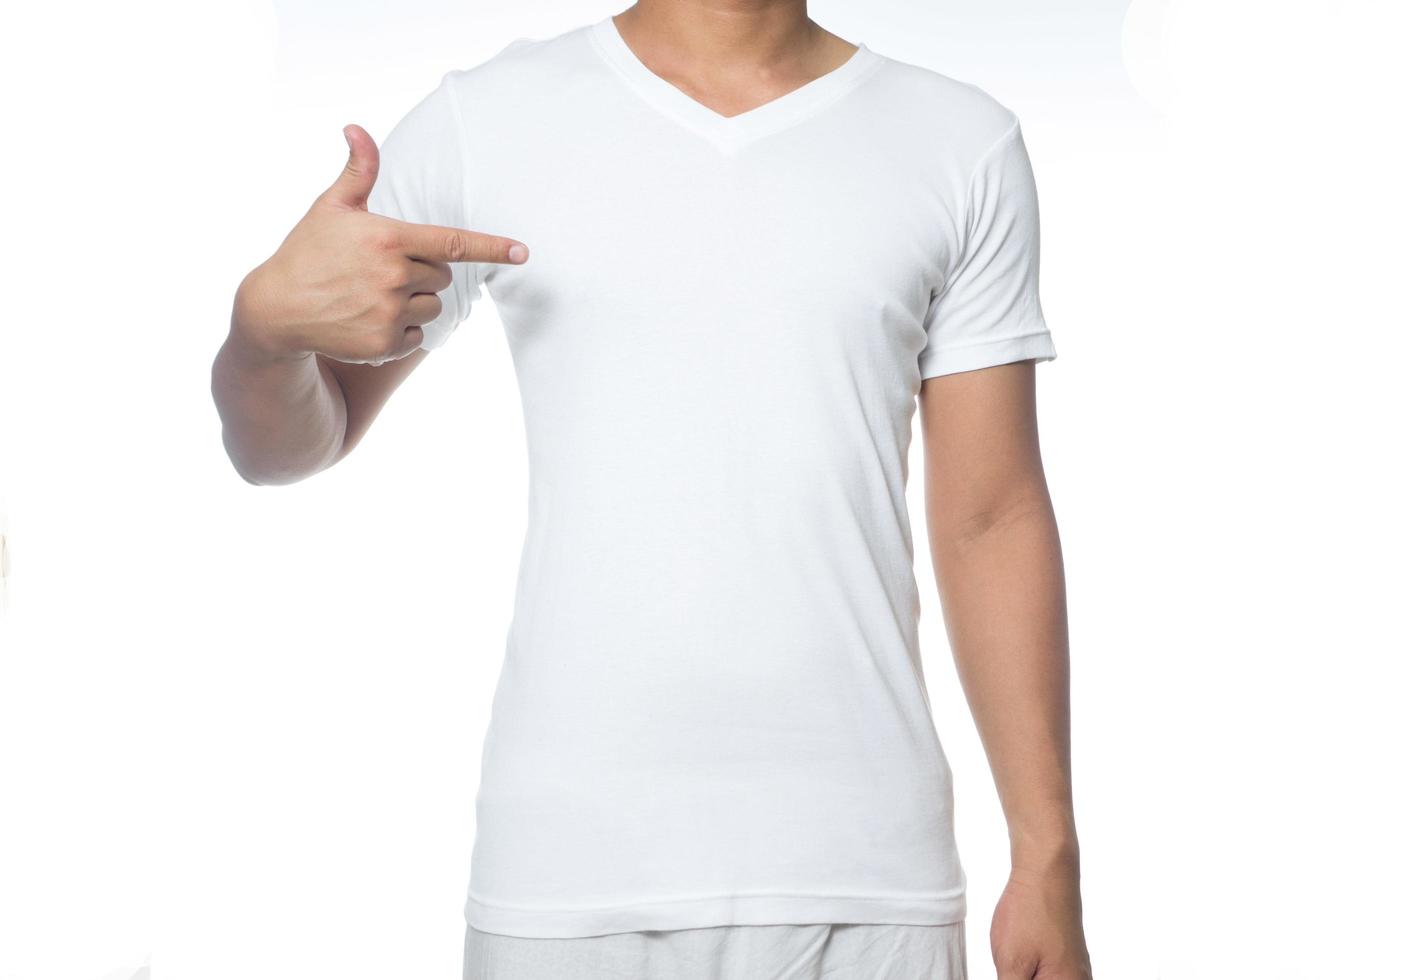 camiseta branca em um jovem isolado no fundo branco foto